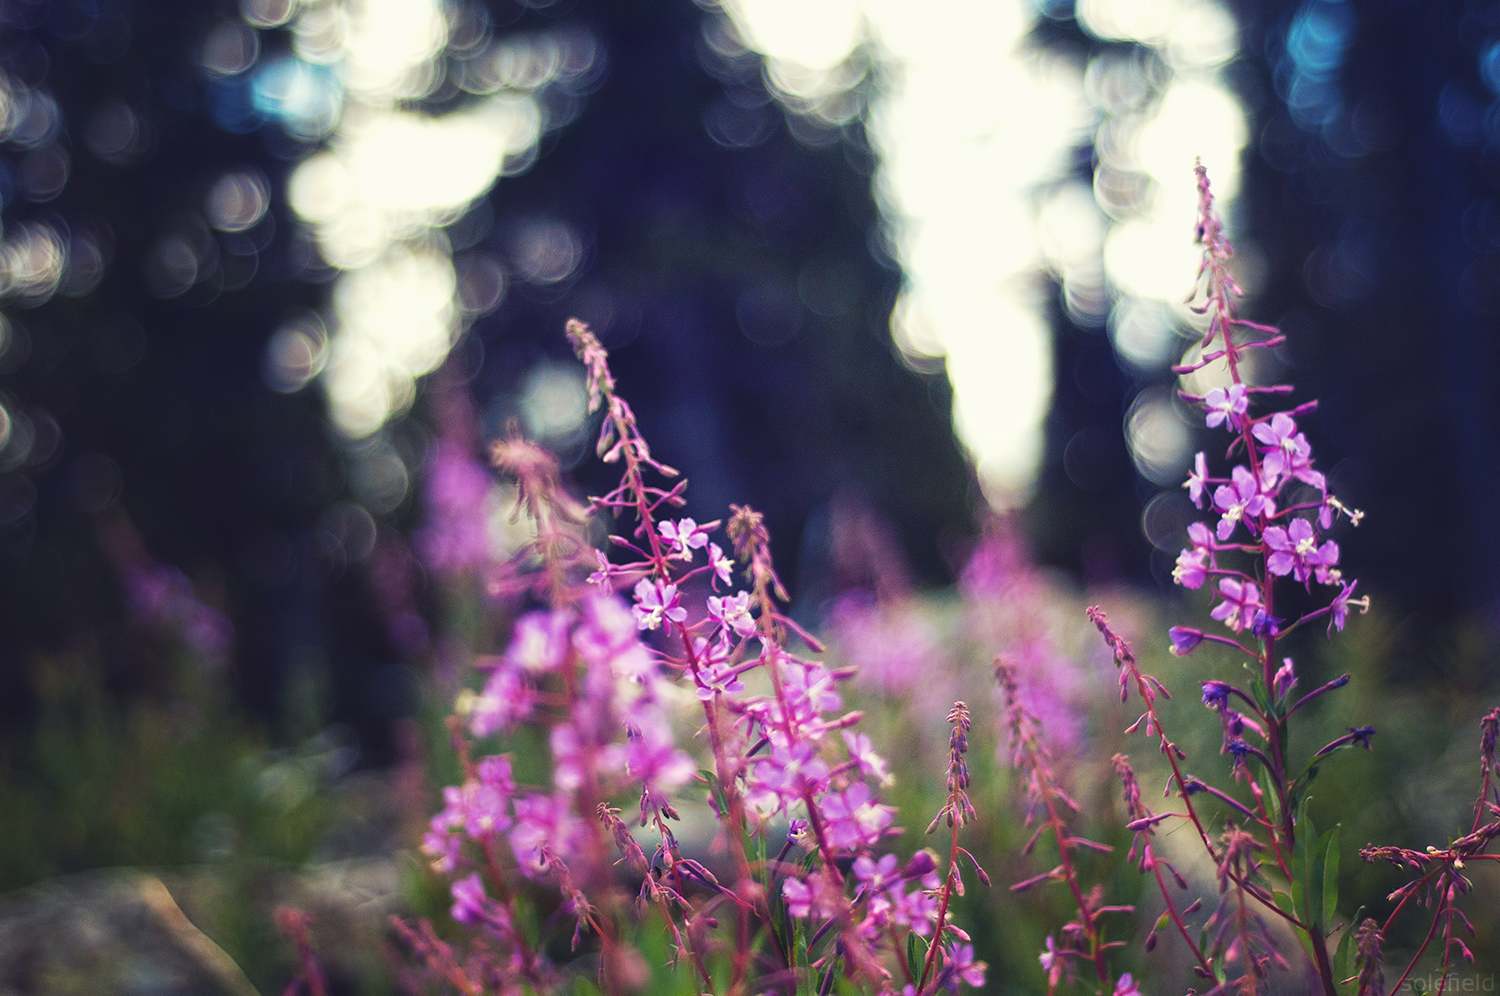 Purple flowers in forest